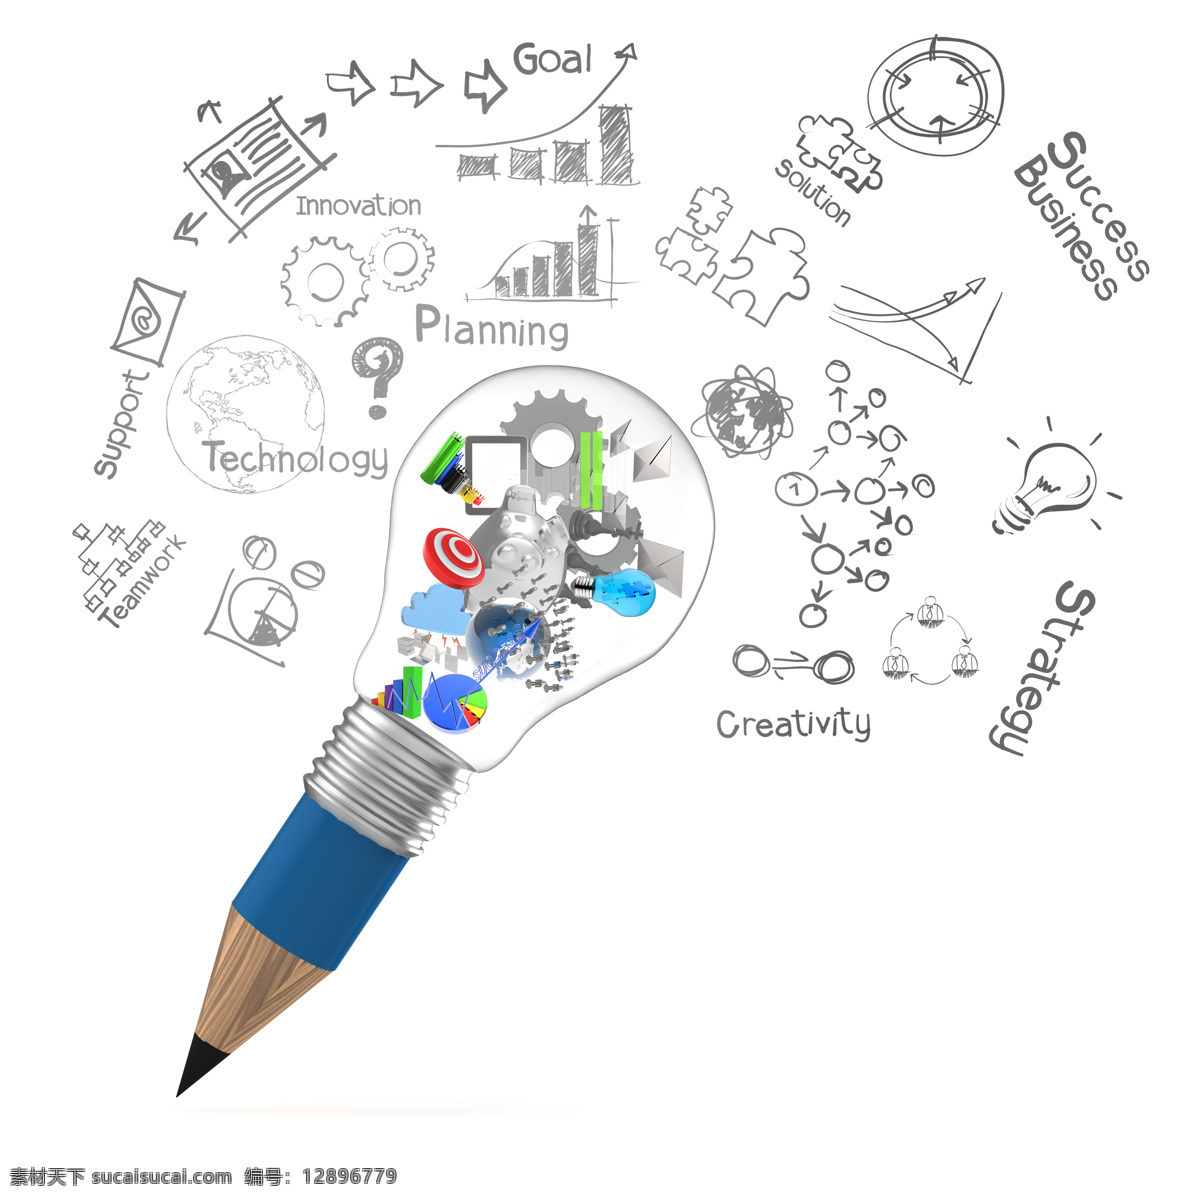 铅笔 灯泡 里 商业战略 创 意图 计划 商业背景 创意背景 办公学习 生活百科 白色